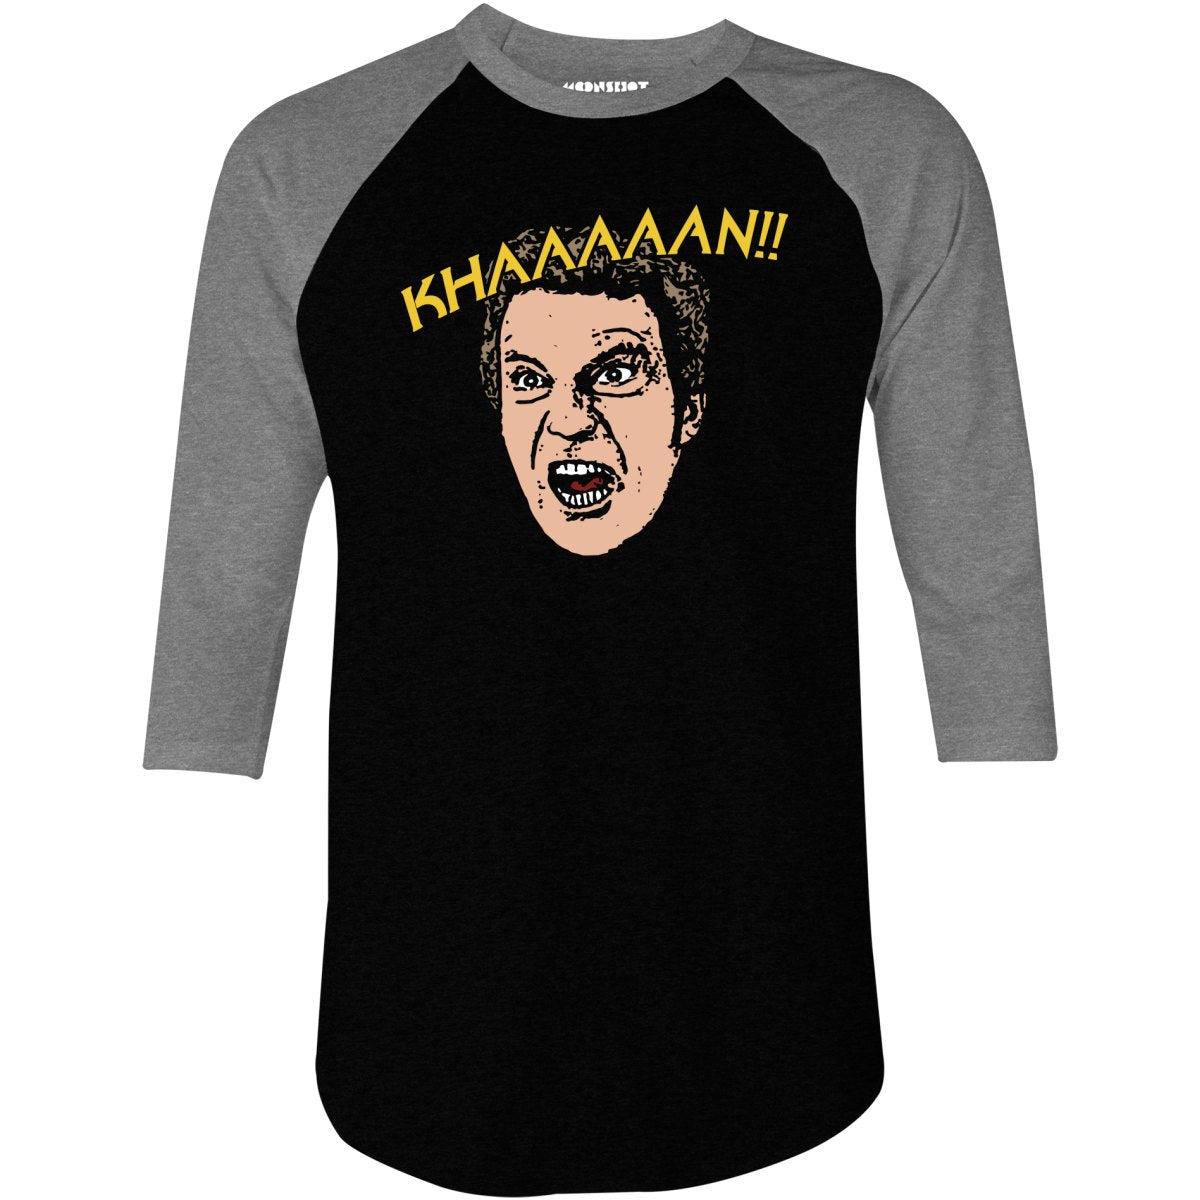 Wrath of Khan - Khaaaaan!! - 3/4 Sleeve Raglan T-Shirt